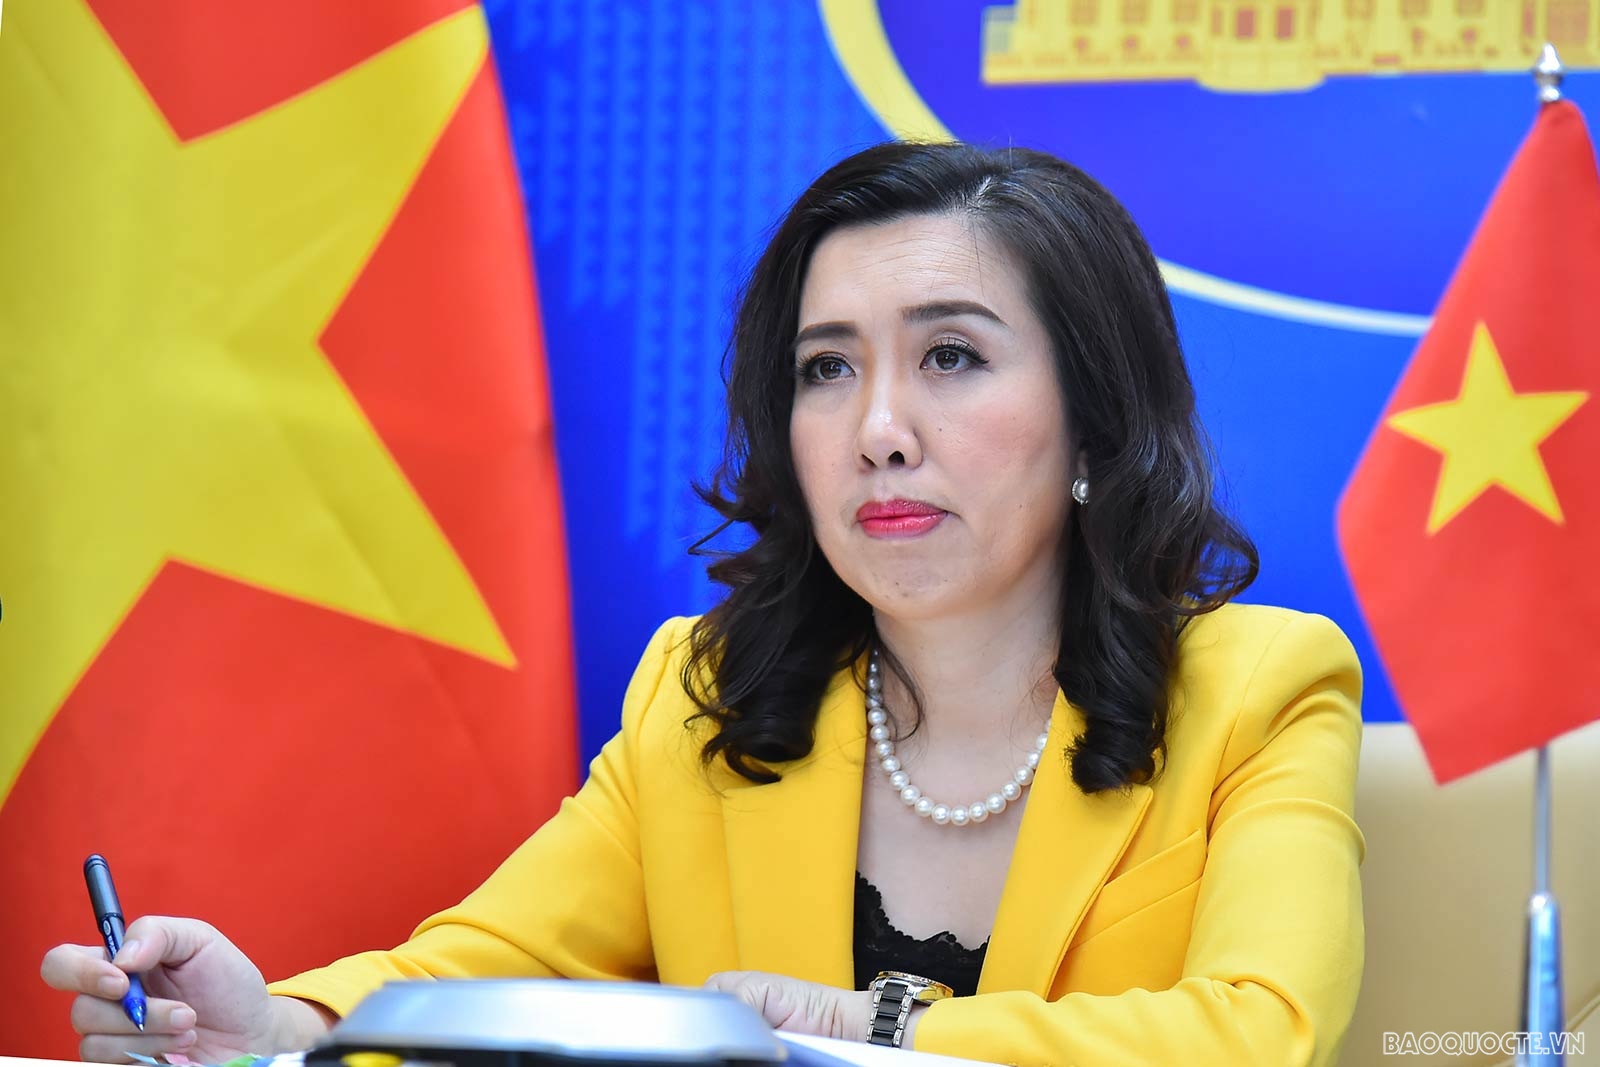 Báo cáo nhân quyền của EU còn một số nội dung chưa khách quan về Việt Nam